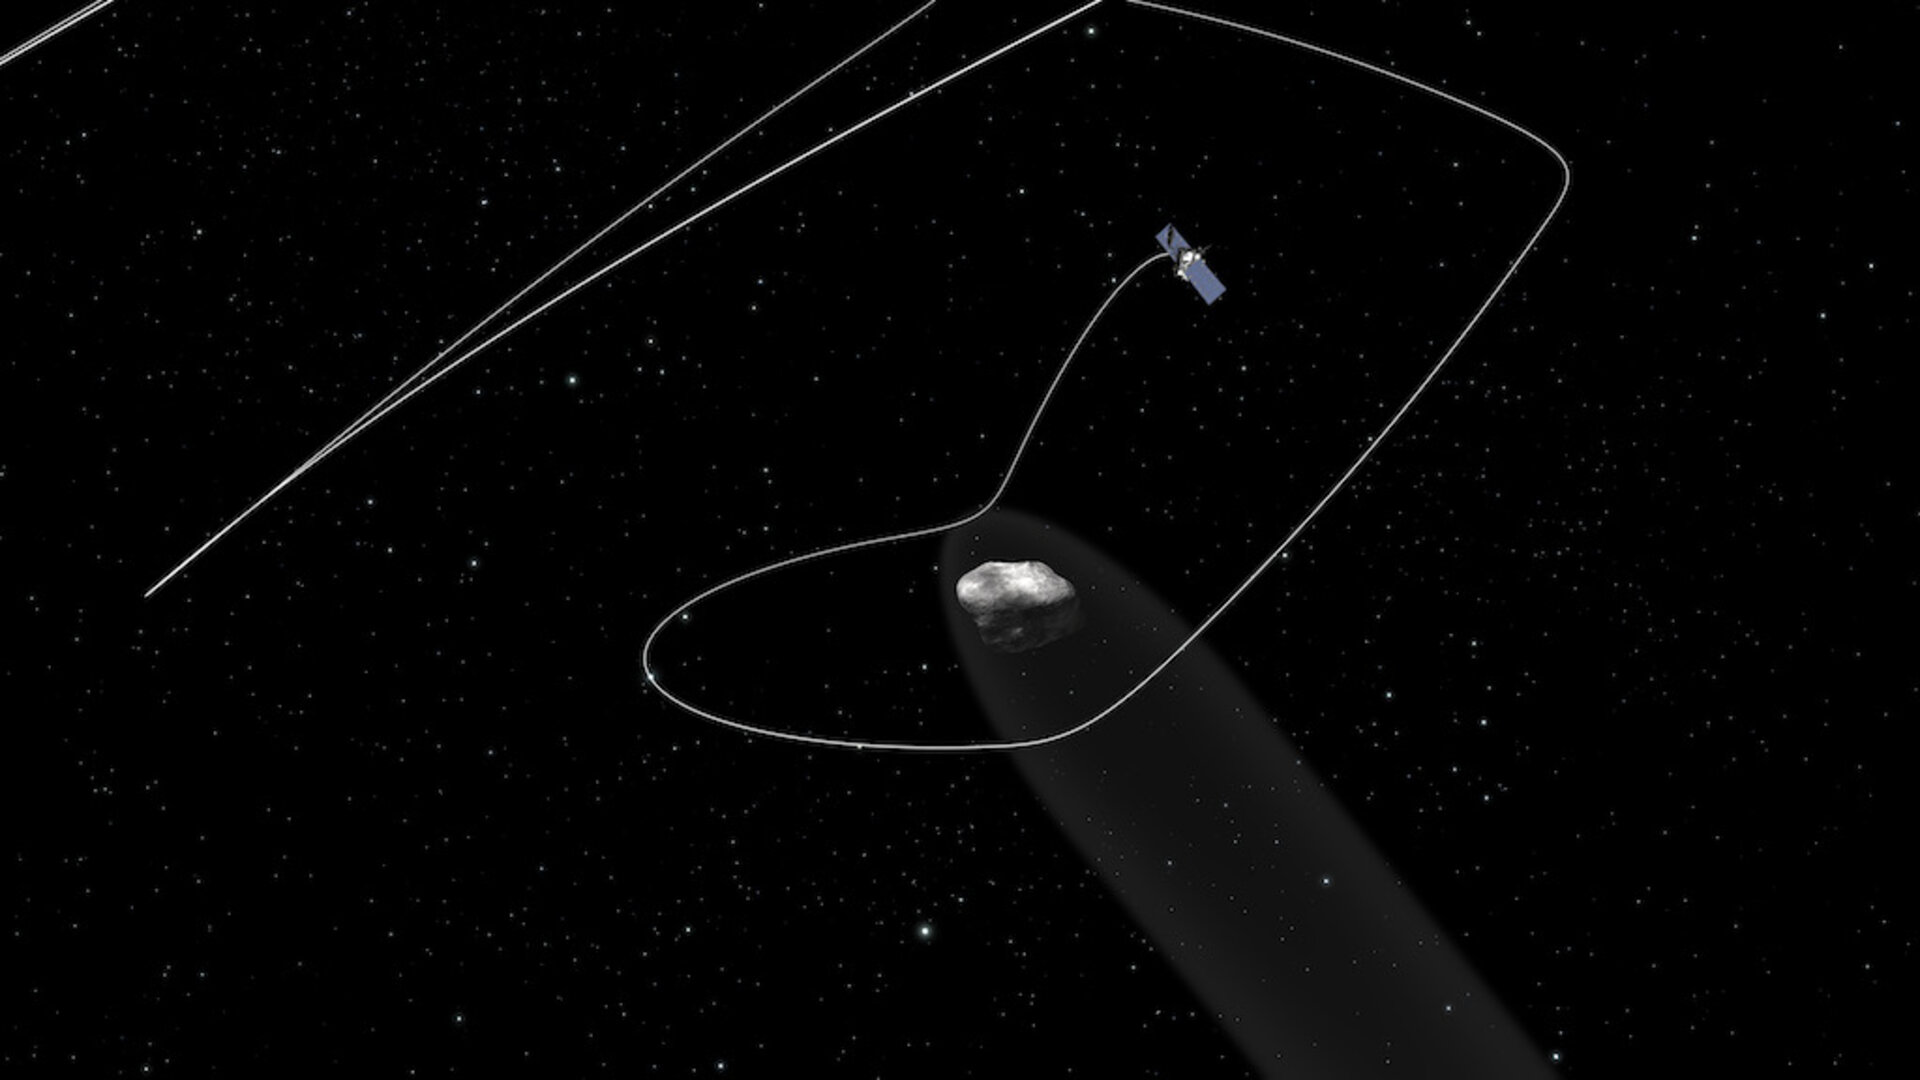 Rosetta orbiting the comet